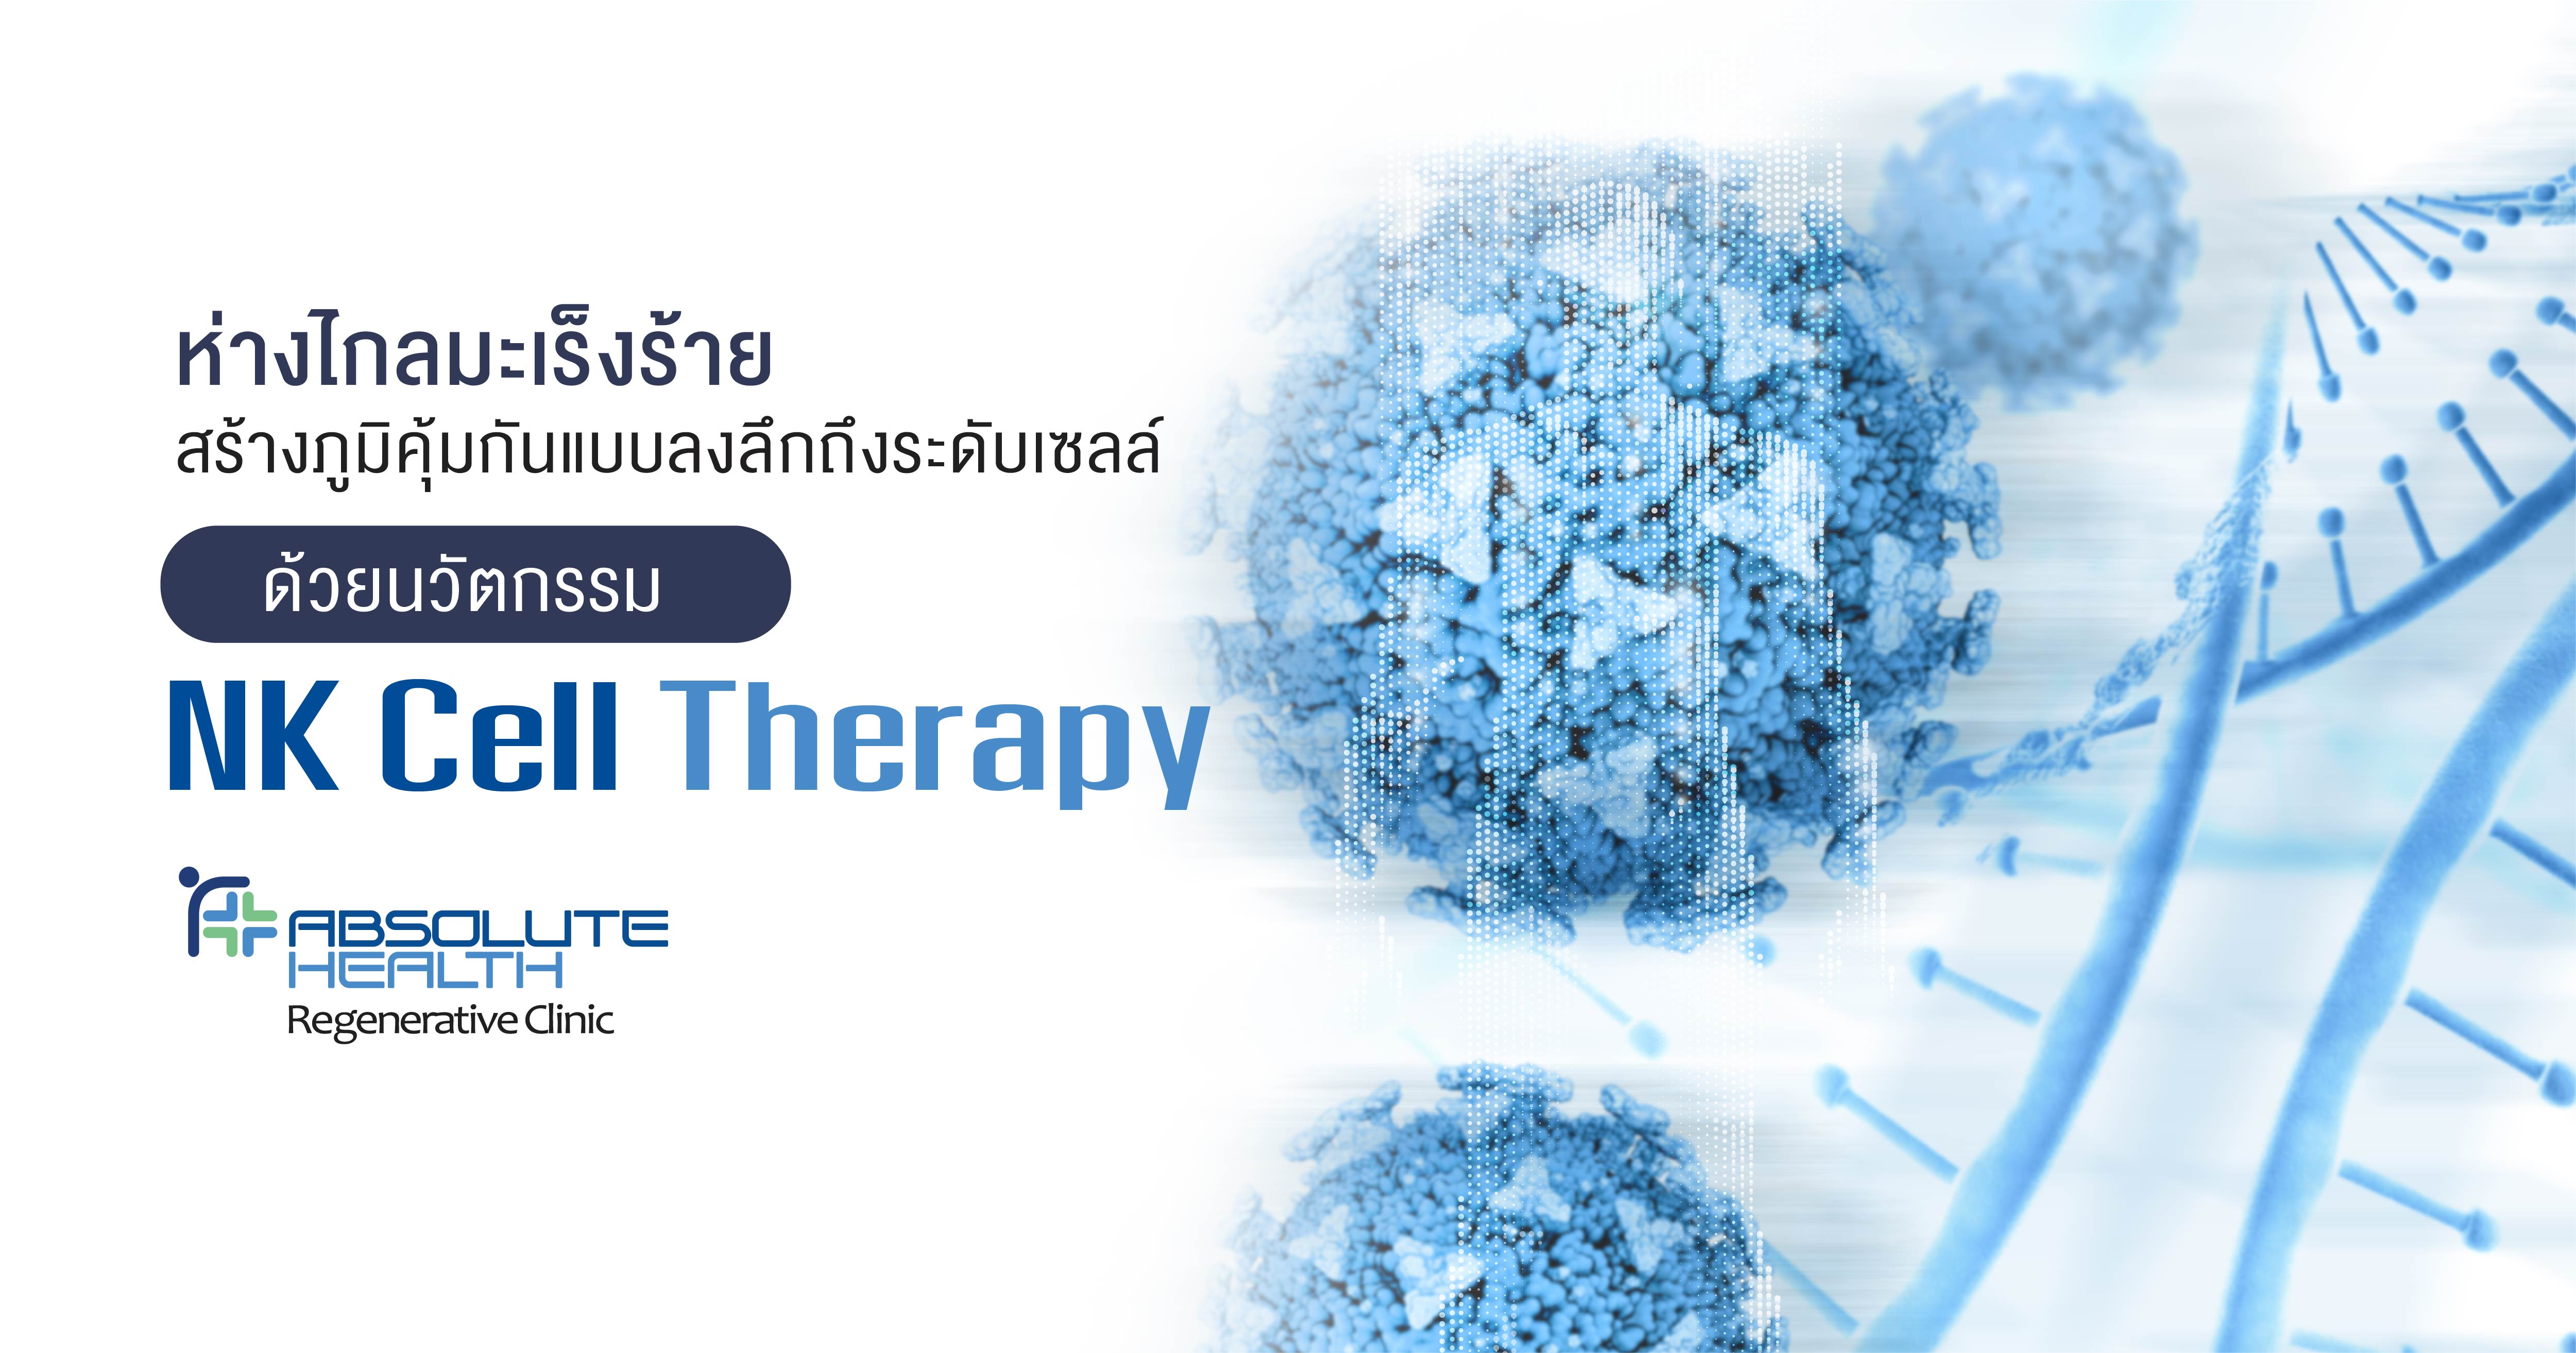 ห่างไกลมะเร็งร้าย สร้างภูมิคุ้มกันแบบลงลึกถึงระดับเซลล์  ด้วยนวัตกรรม  NK Cell Therapy